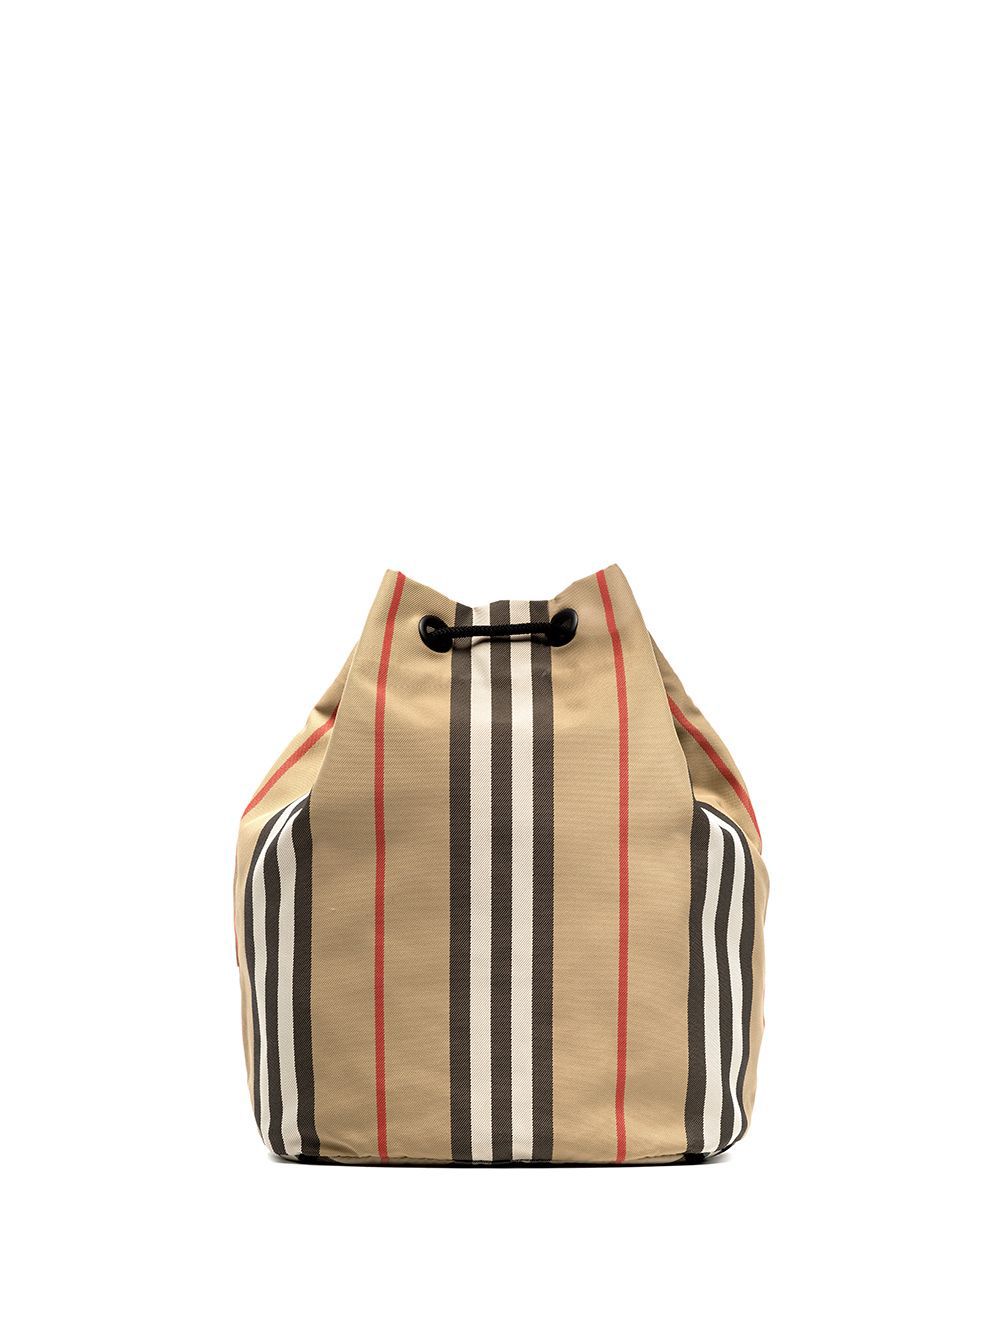 фото Burberry сумка с логотипом и полосками icon stripe